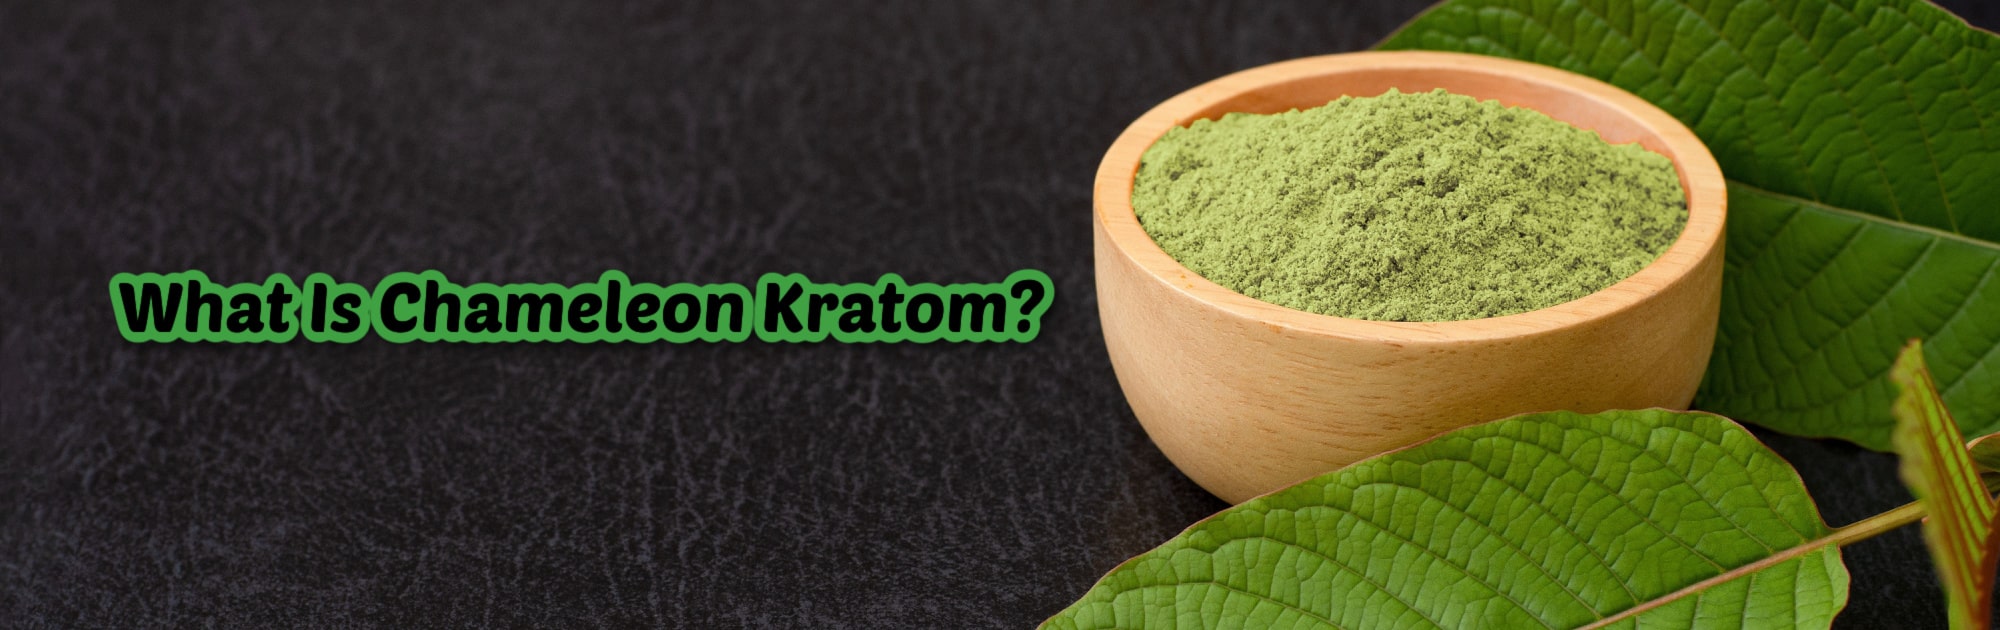 image of what is chameleon kratom